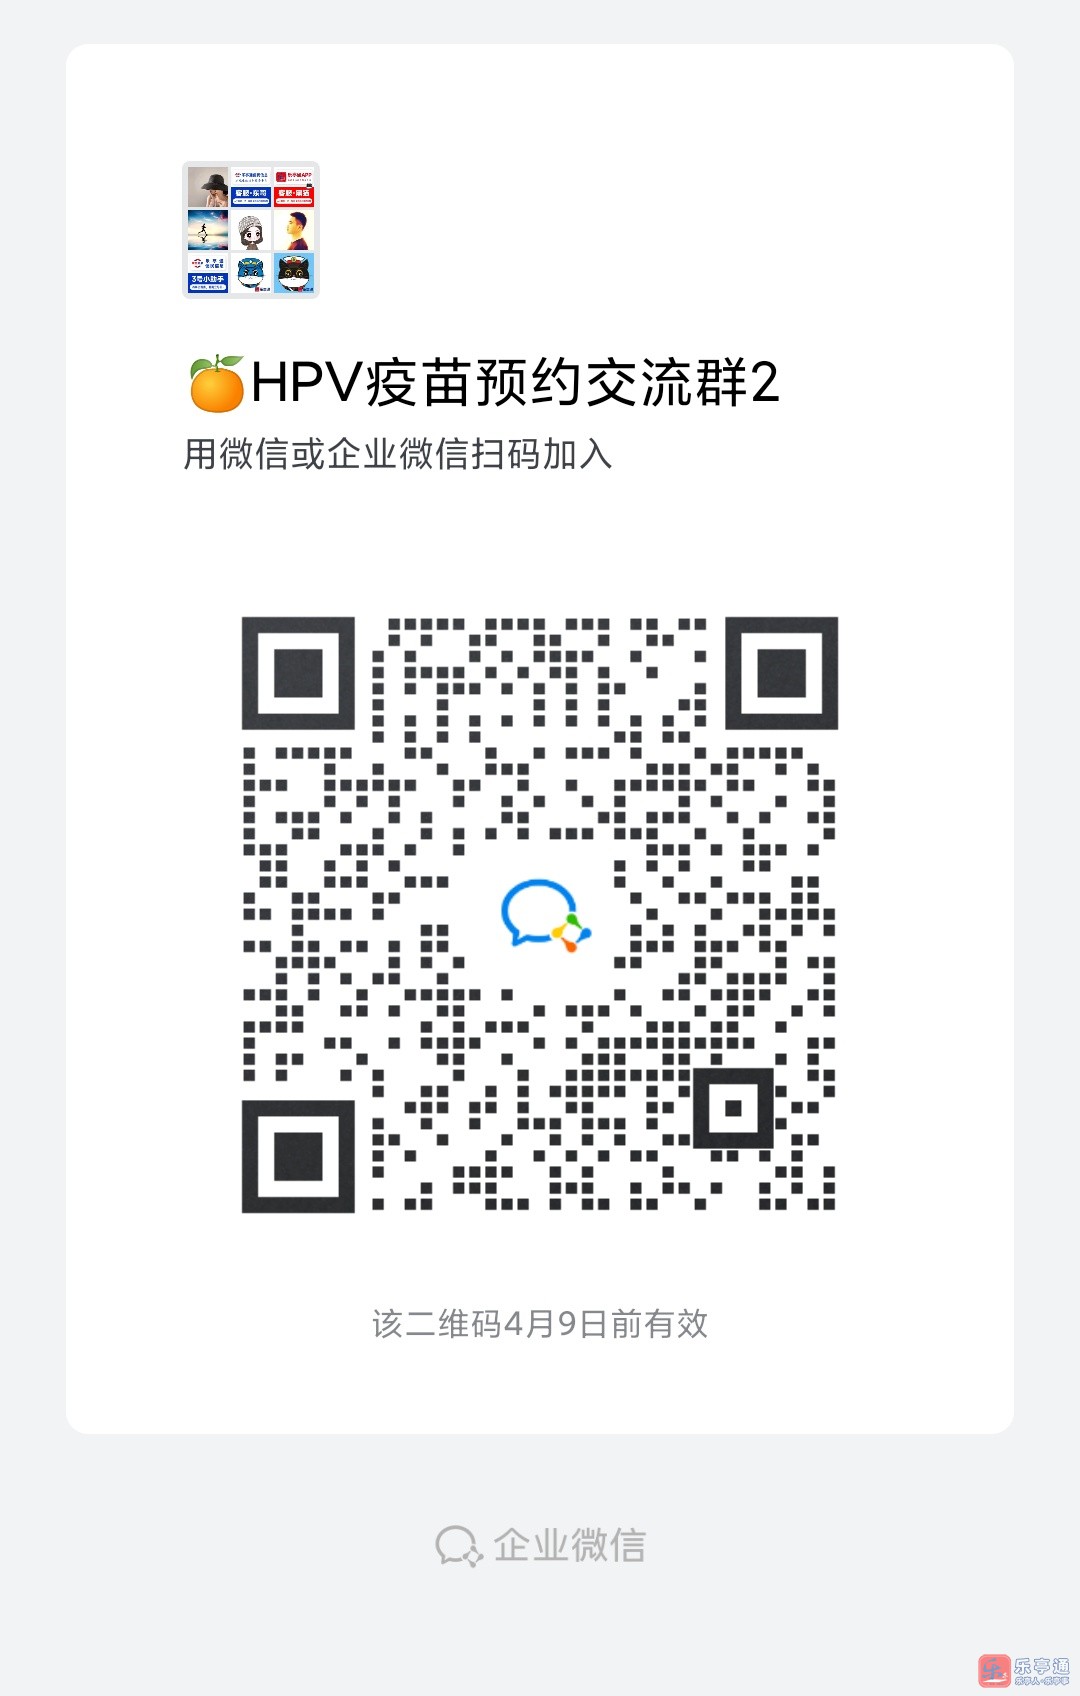 HPV.jpg